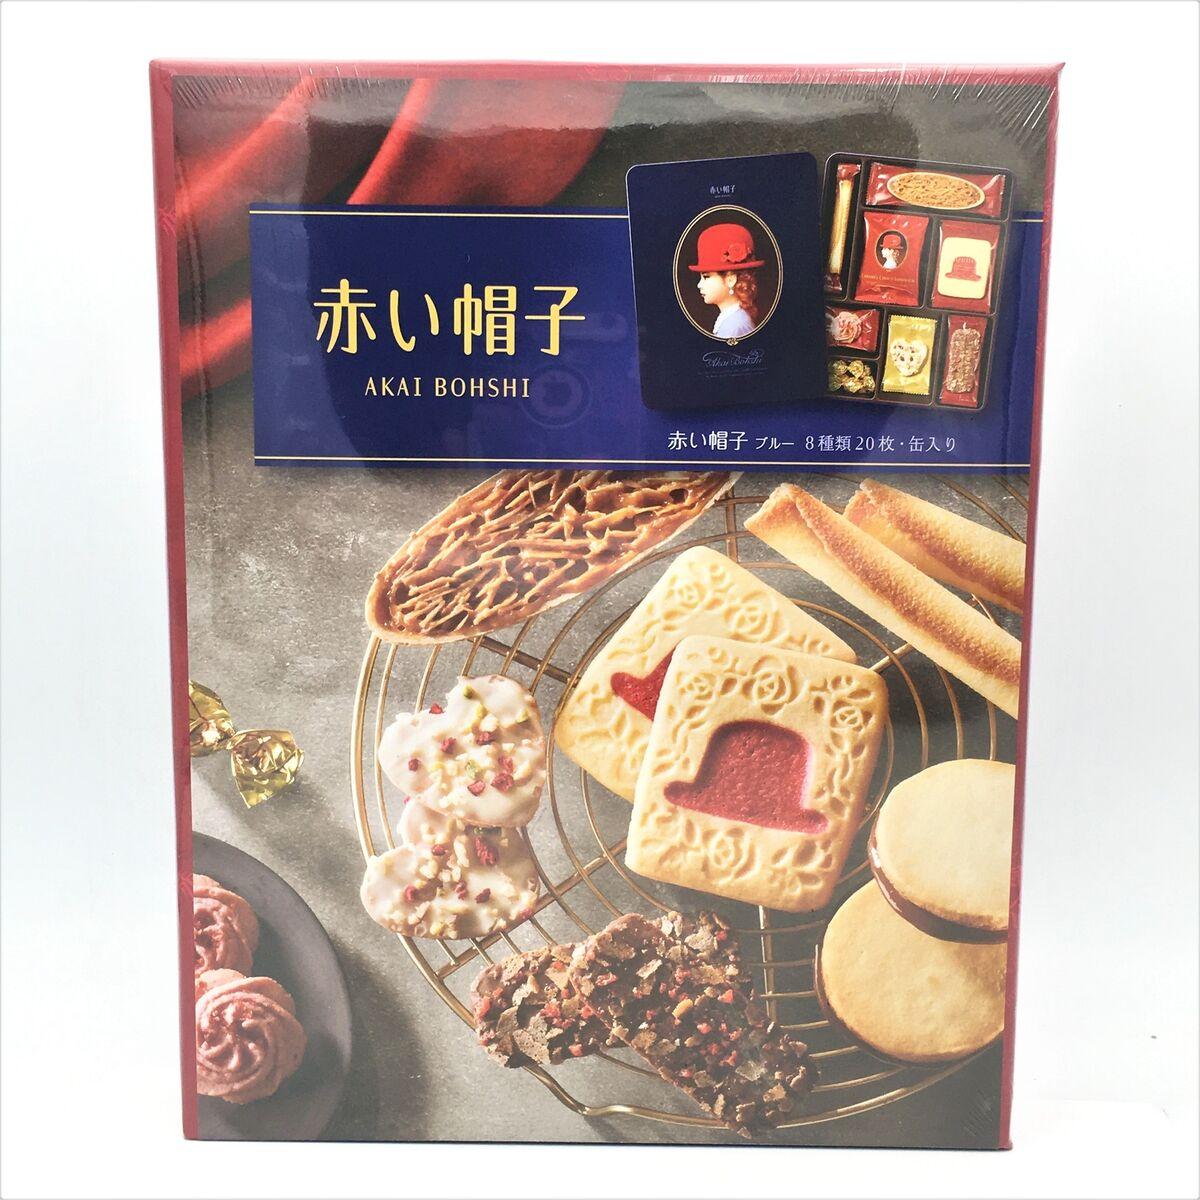 akai-bohshi-cookies-gift-box